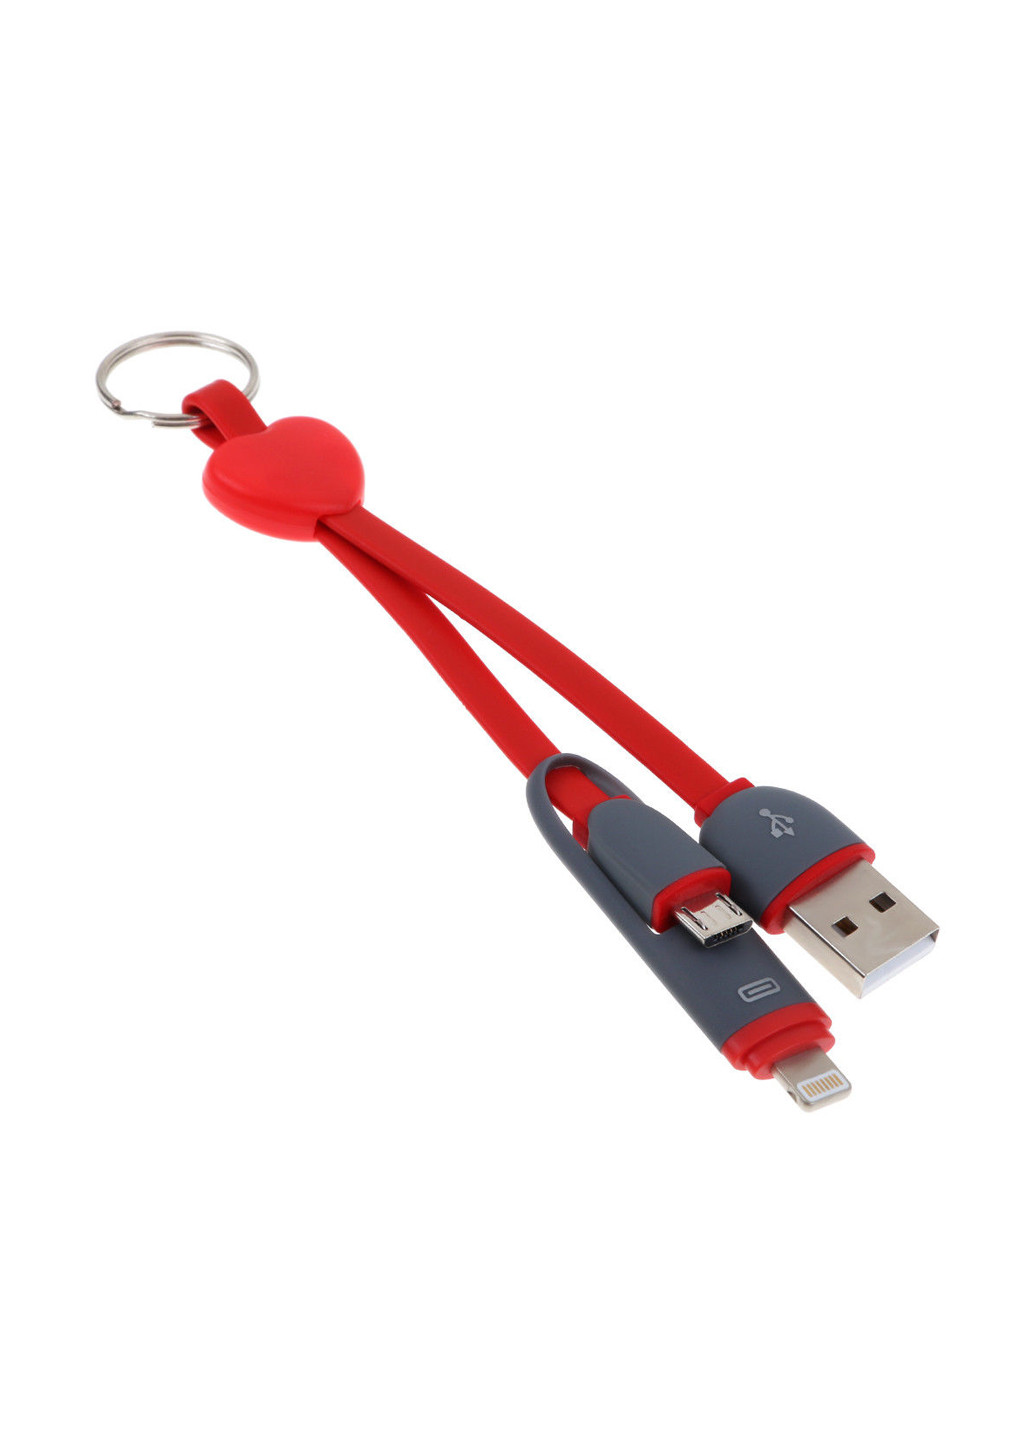 Кабель-брелок USB key Red, 2 в 1 - Lightning, Micro USB, 25 см XoKo sc-201 (132572855)